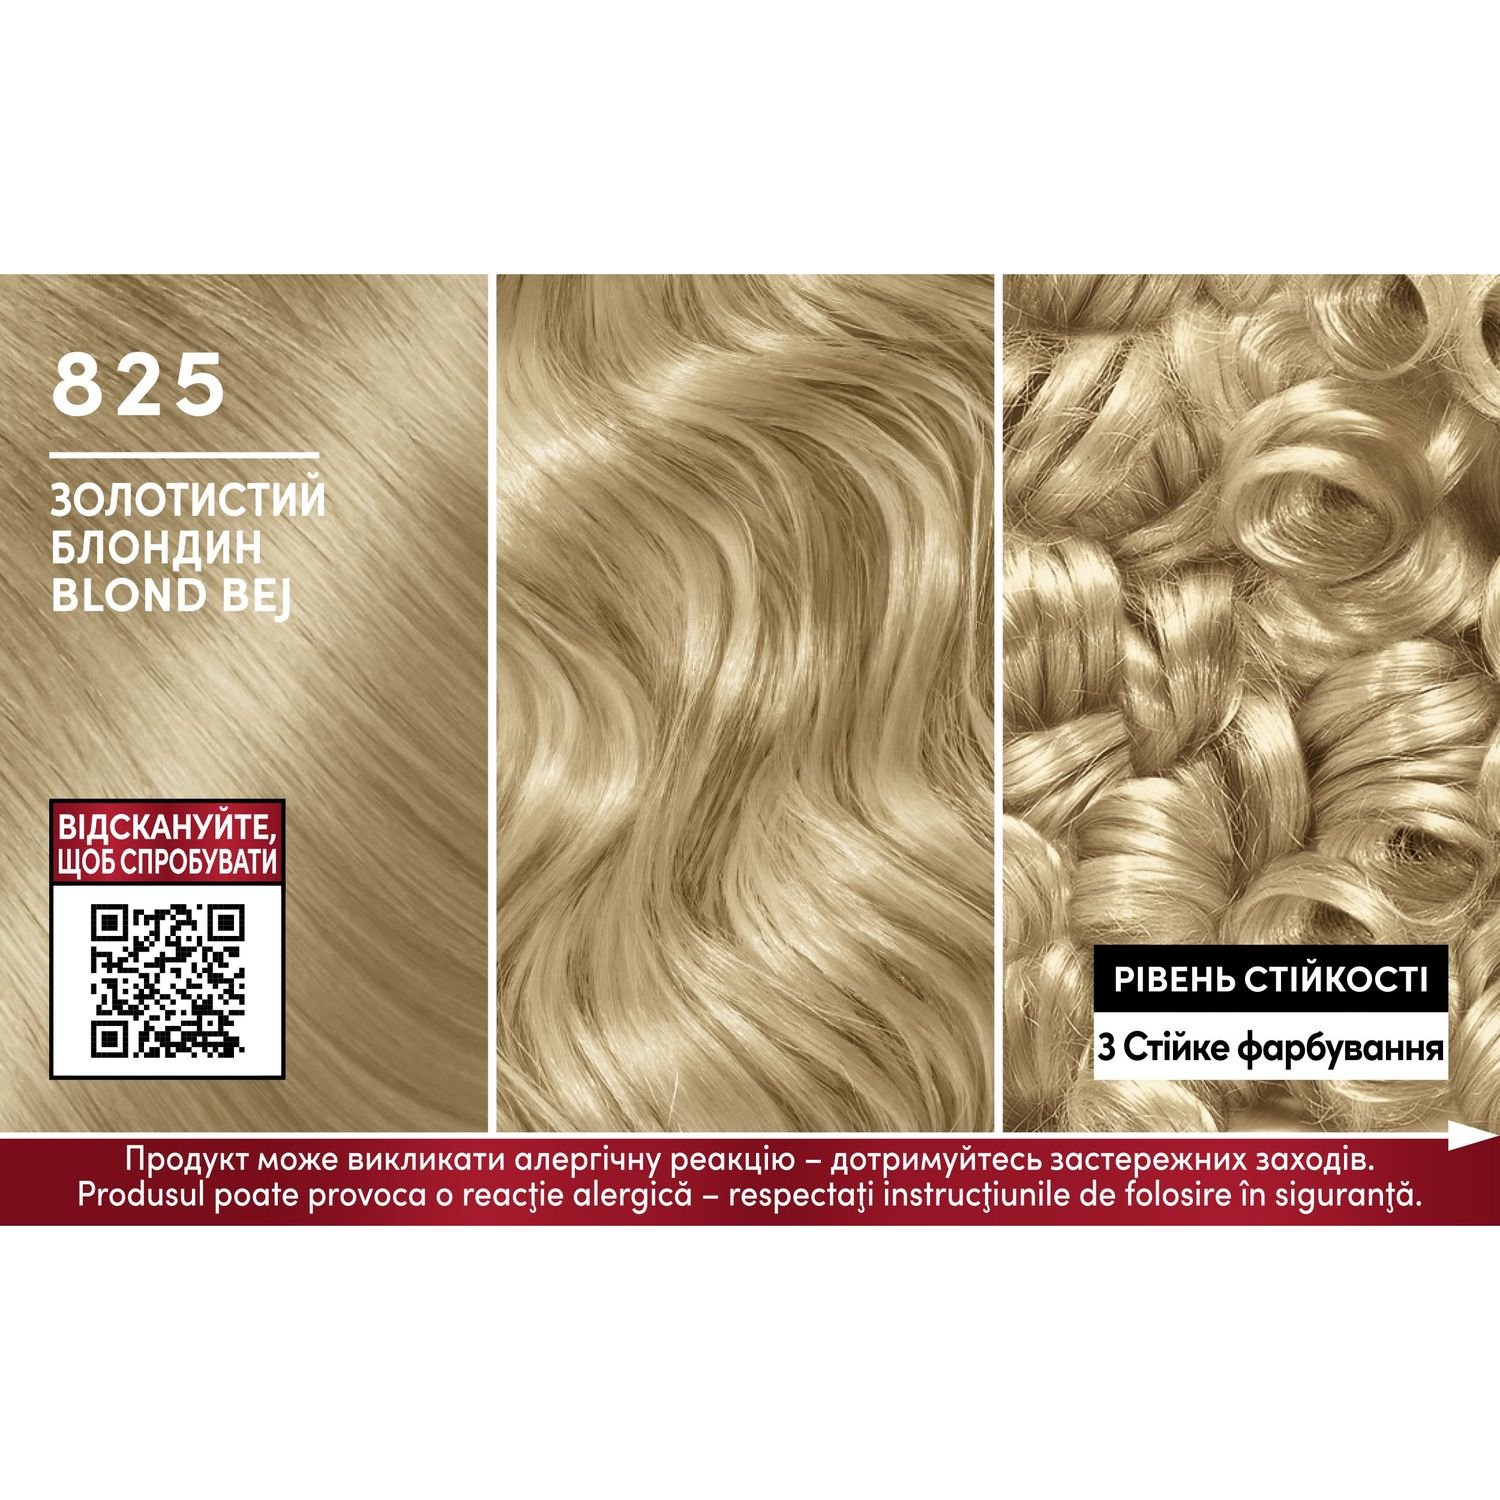 Стойкая крем-краска для волос Schwarzkopf Brillance, тон 825 (Золотистый блондин), 170 мл - фото 2